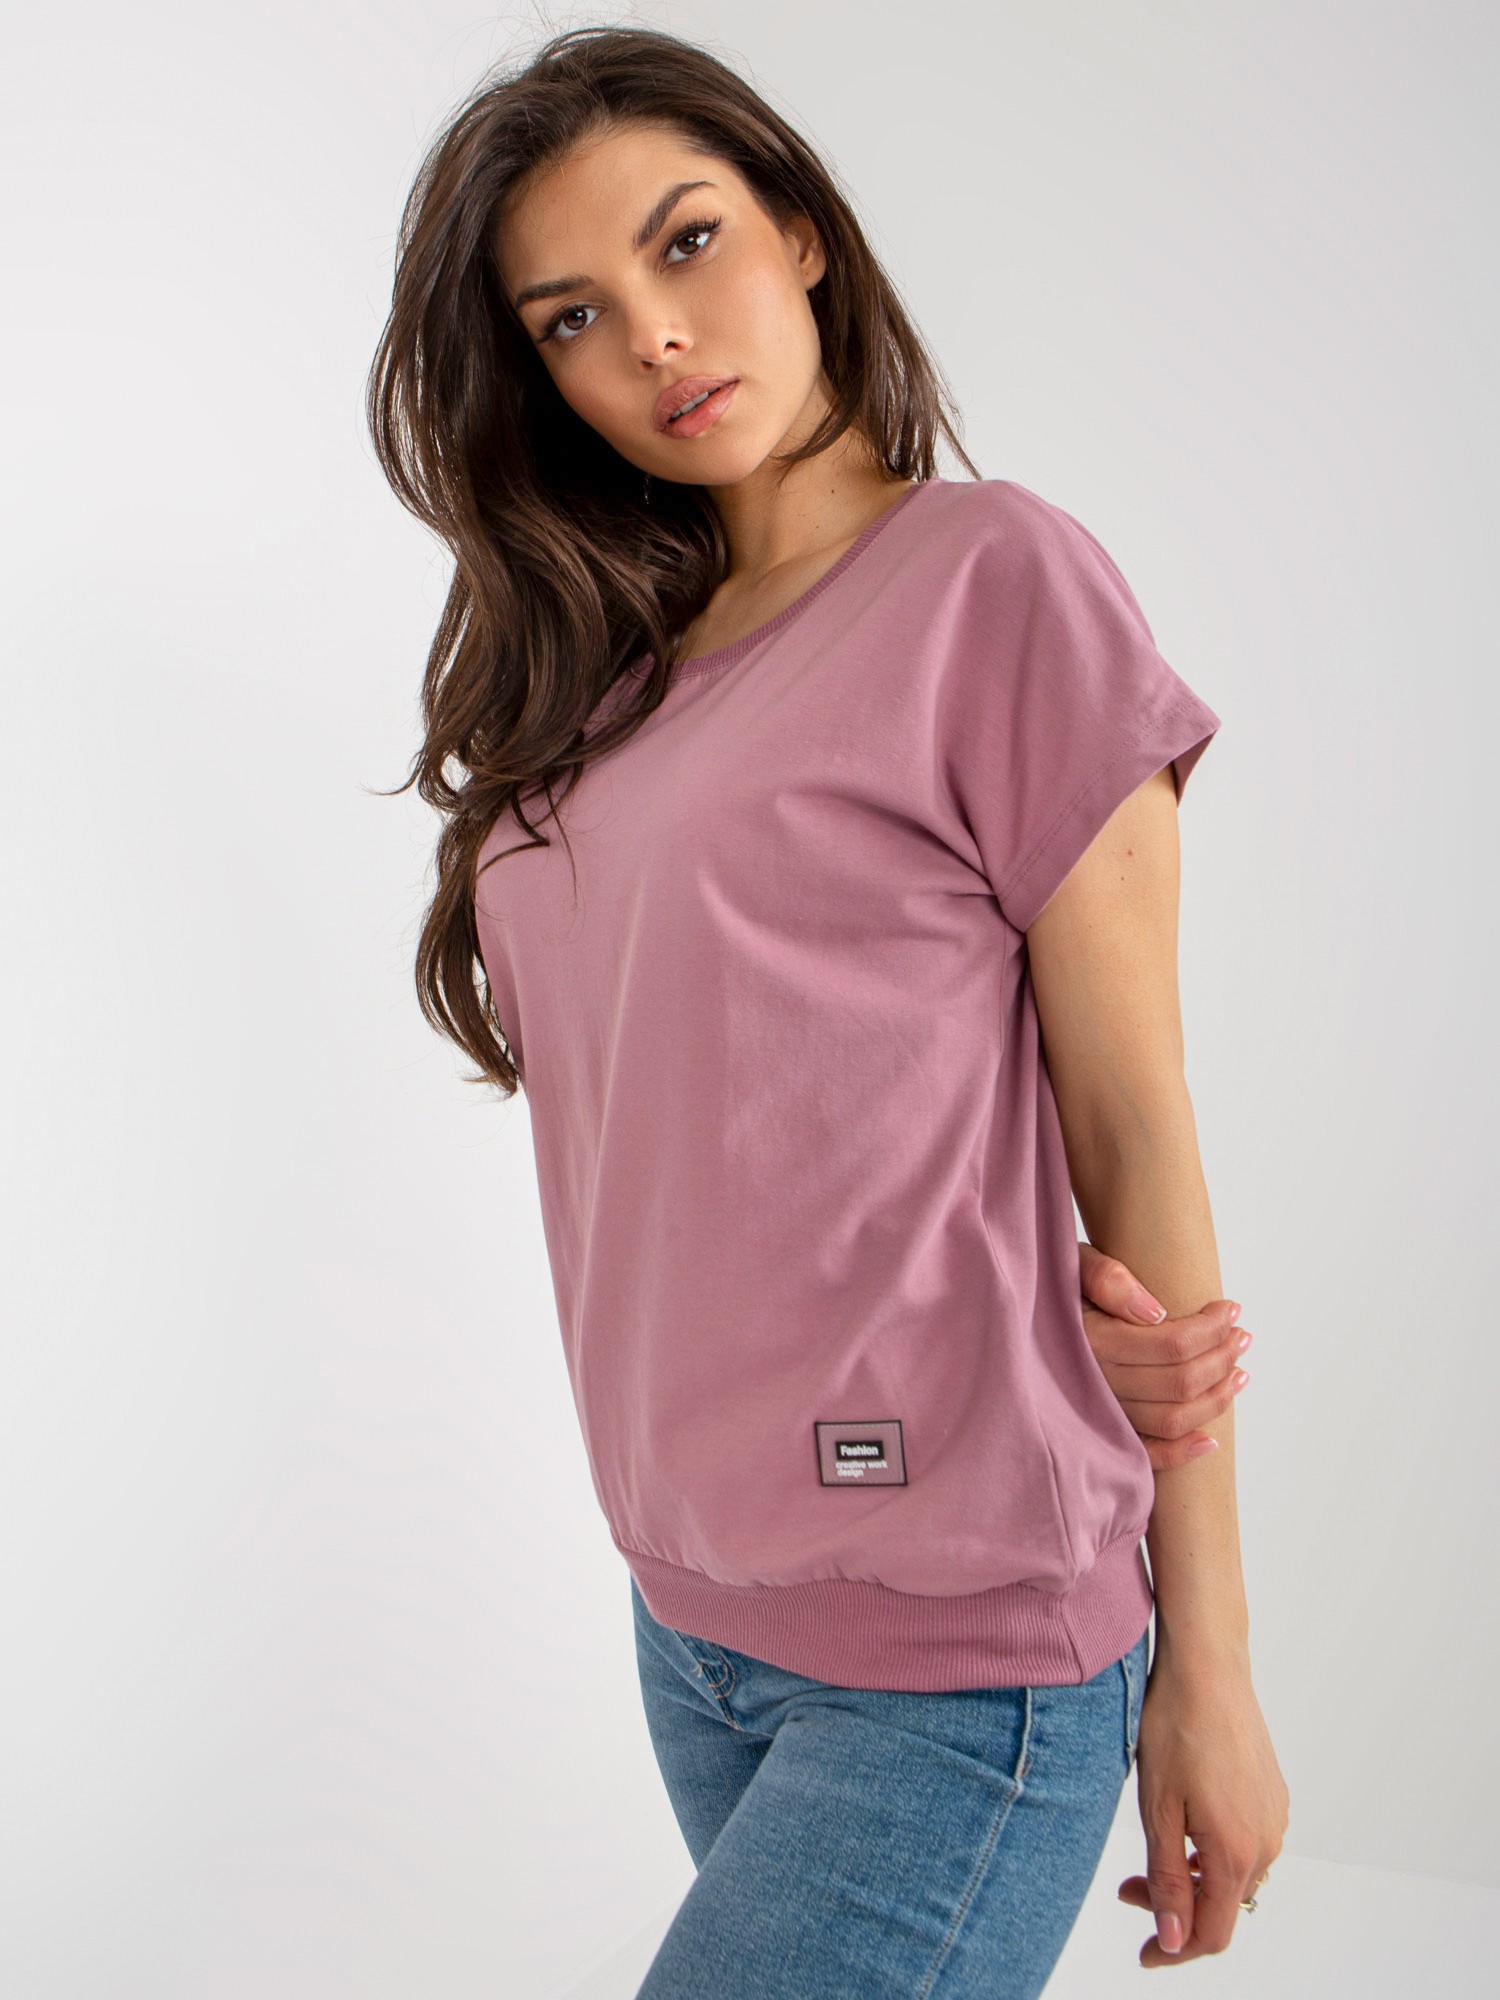 Σκονισμένη ροζ βασική βαμβακερή καλοκαιρινή μπλούζα